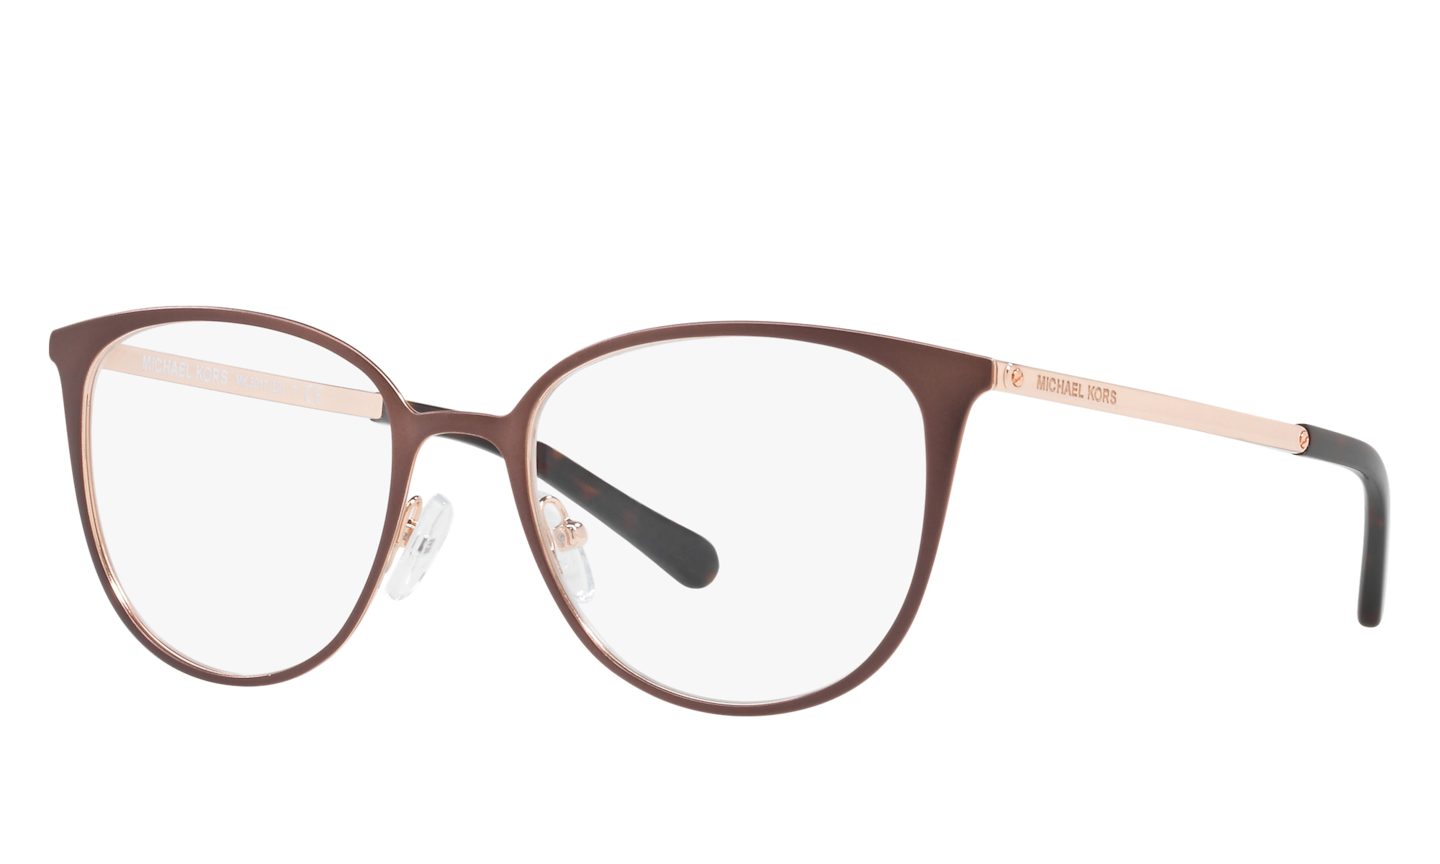 Michael Kors Satin Brown/Rose Gold Eyeglasses ® | Free Shipping